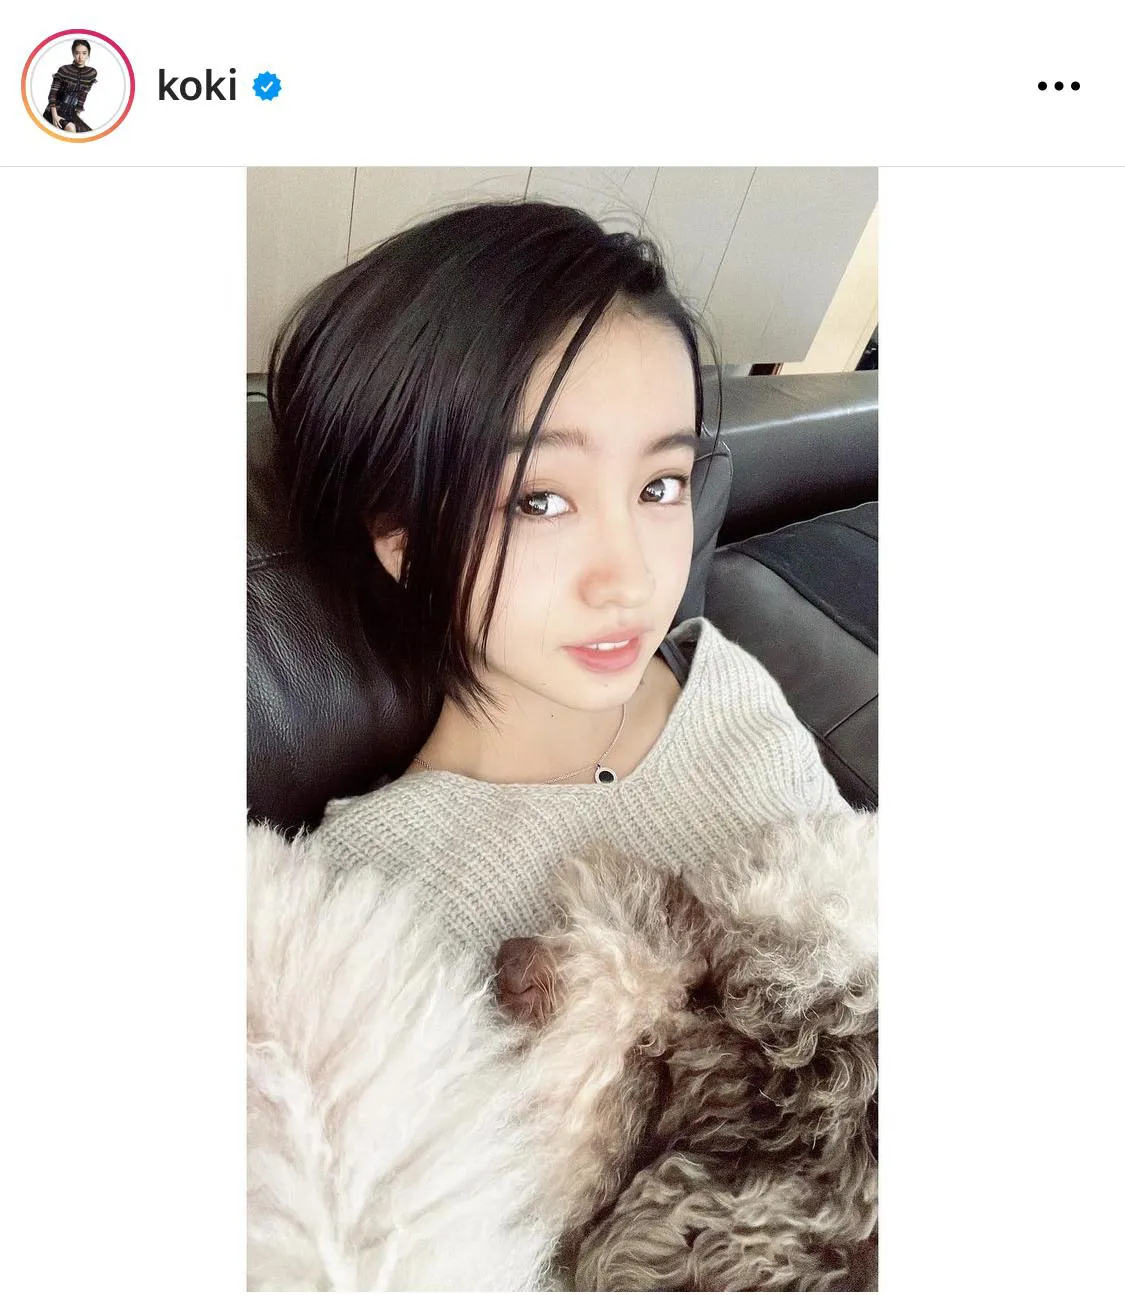  ※Koki,公式Instagram(koki)より